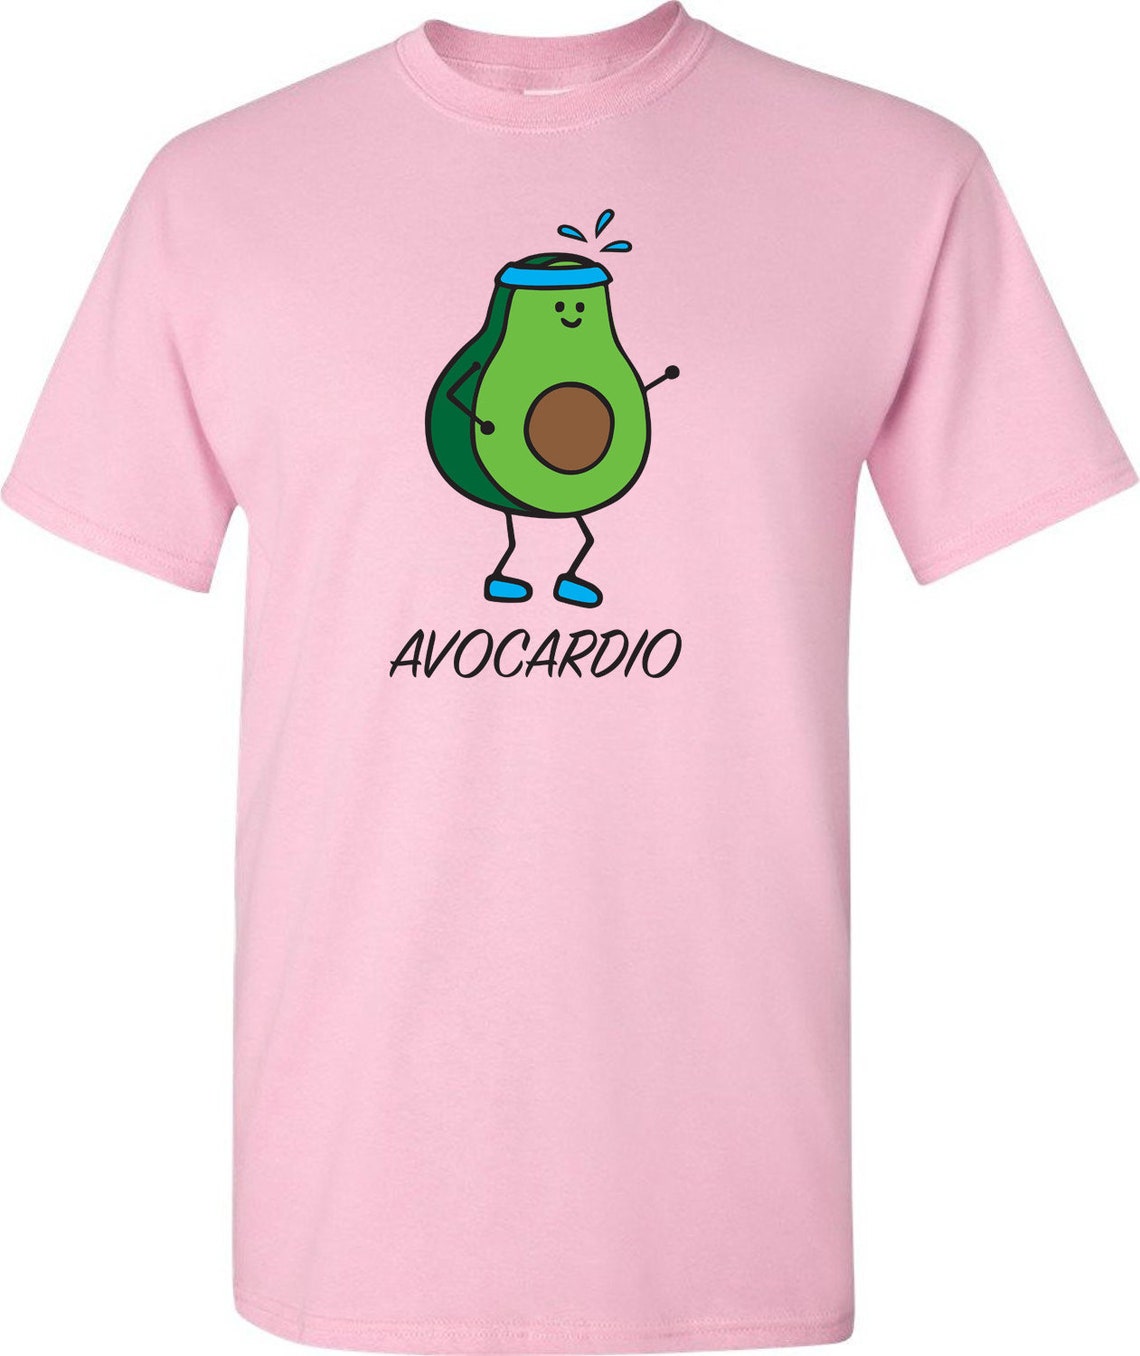 Avocardio Unisex T-Shirt | Etsy